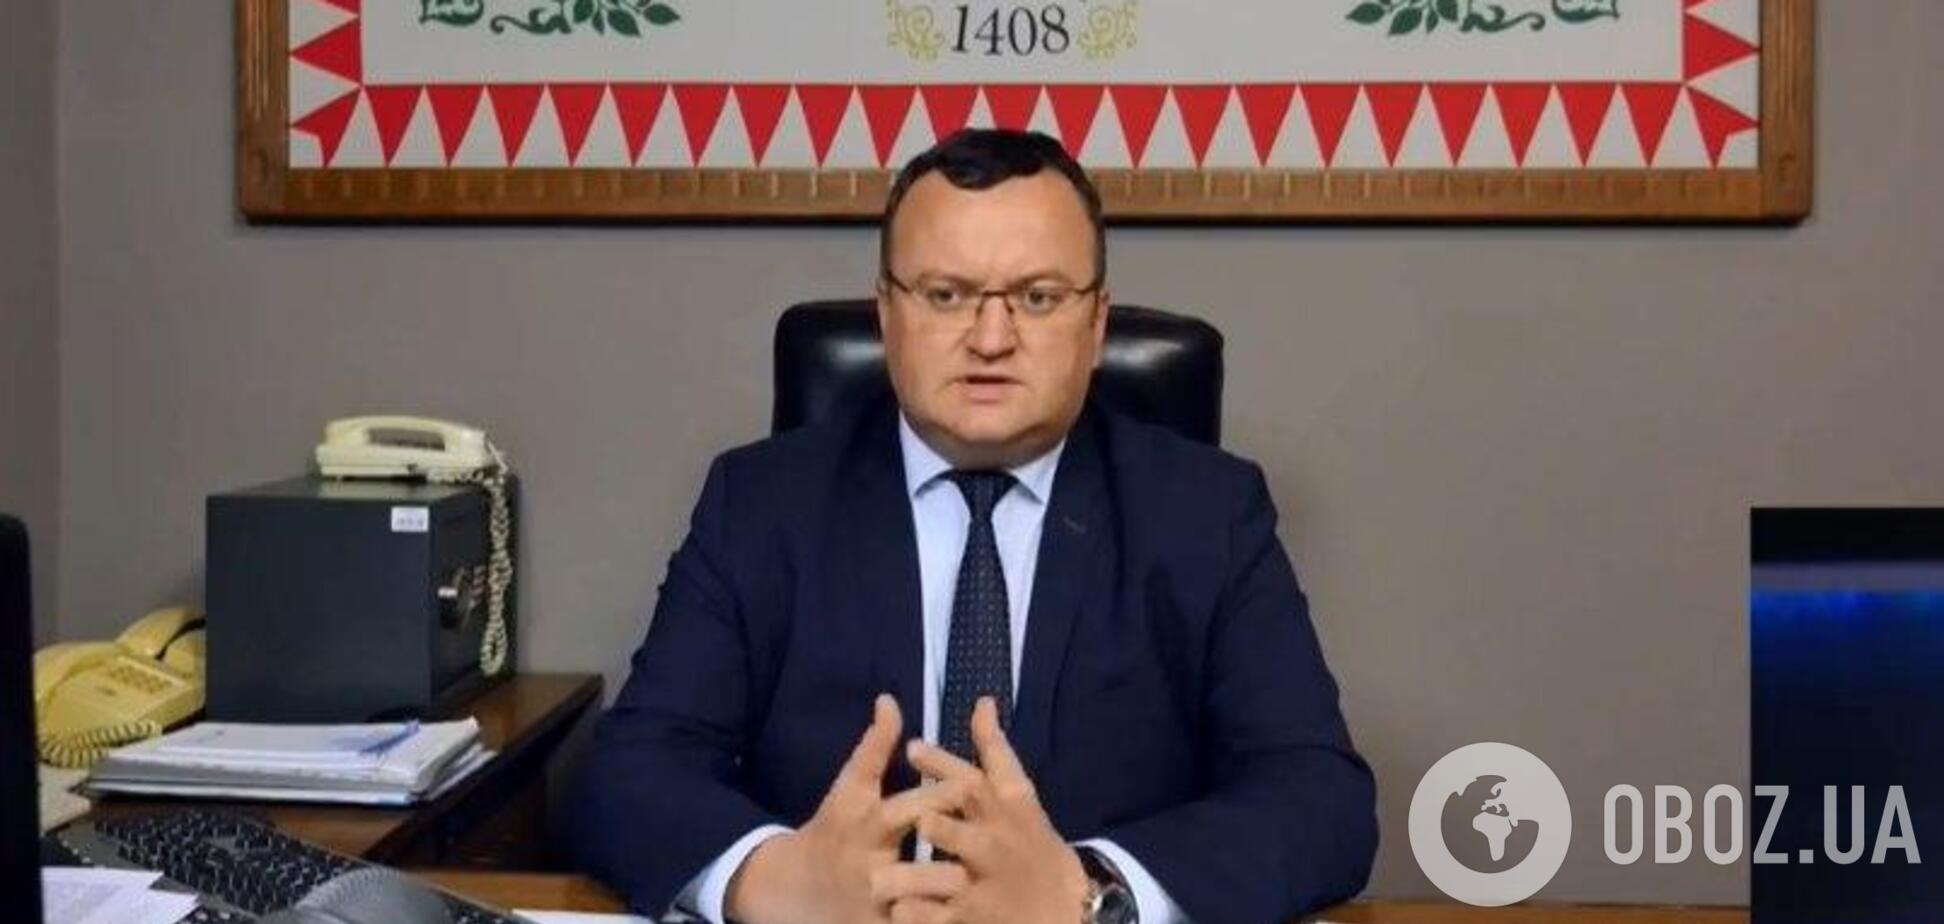 Коронавирус в Черновцах: мэр города заявил об отсутствии тест-систем